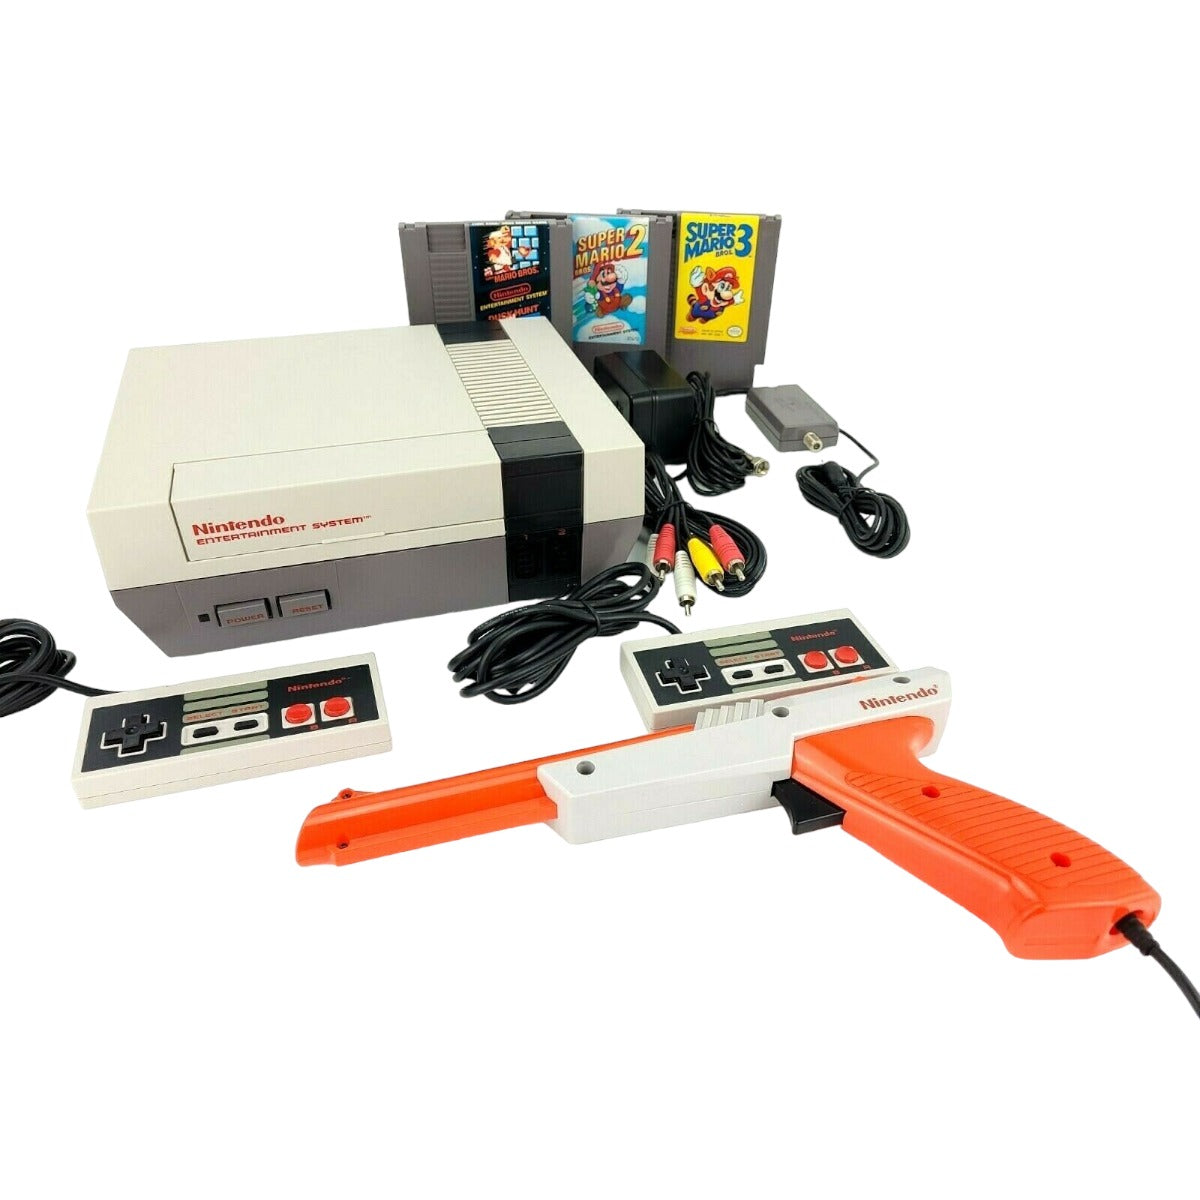 Buy an Original NES Nintendo System Console